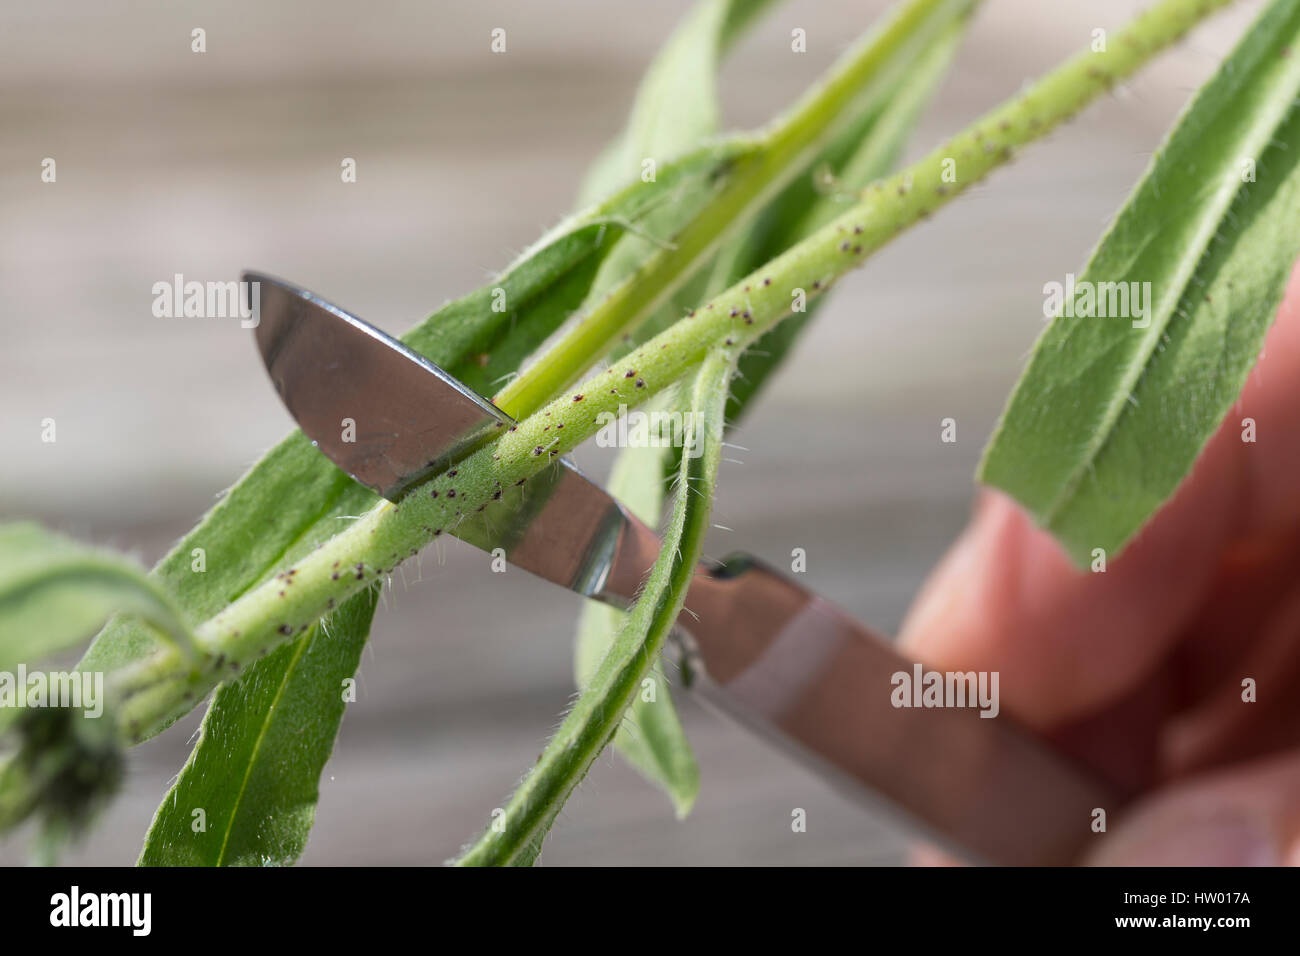 Pflanzen aufschneiden, dickere Pflanzenteile werden aufgeschnitten, um  besser gepresst werden zu können, Stengel, Stängel vom Natternkopf wird mit  Ska Stock Photo - Alamy